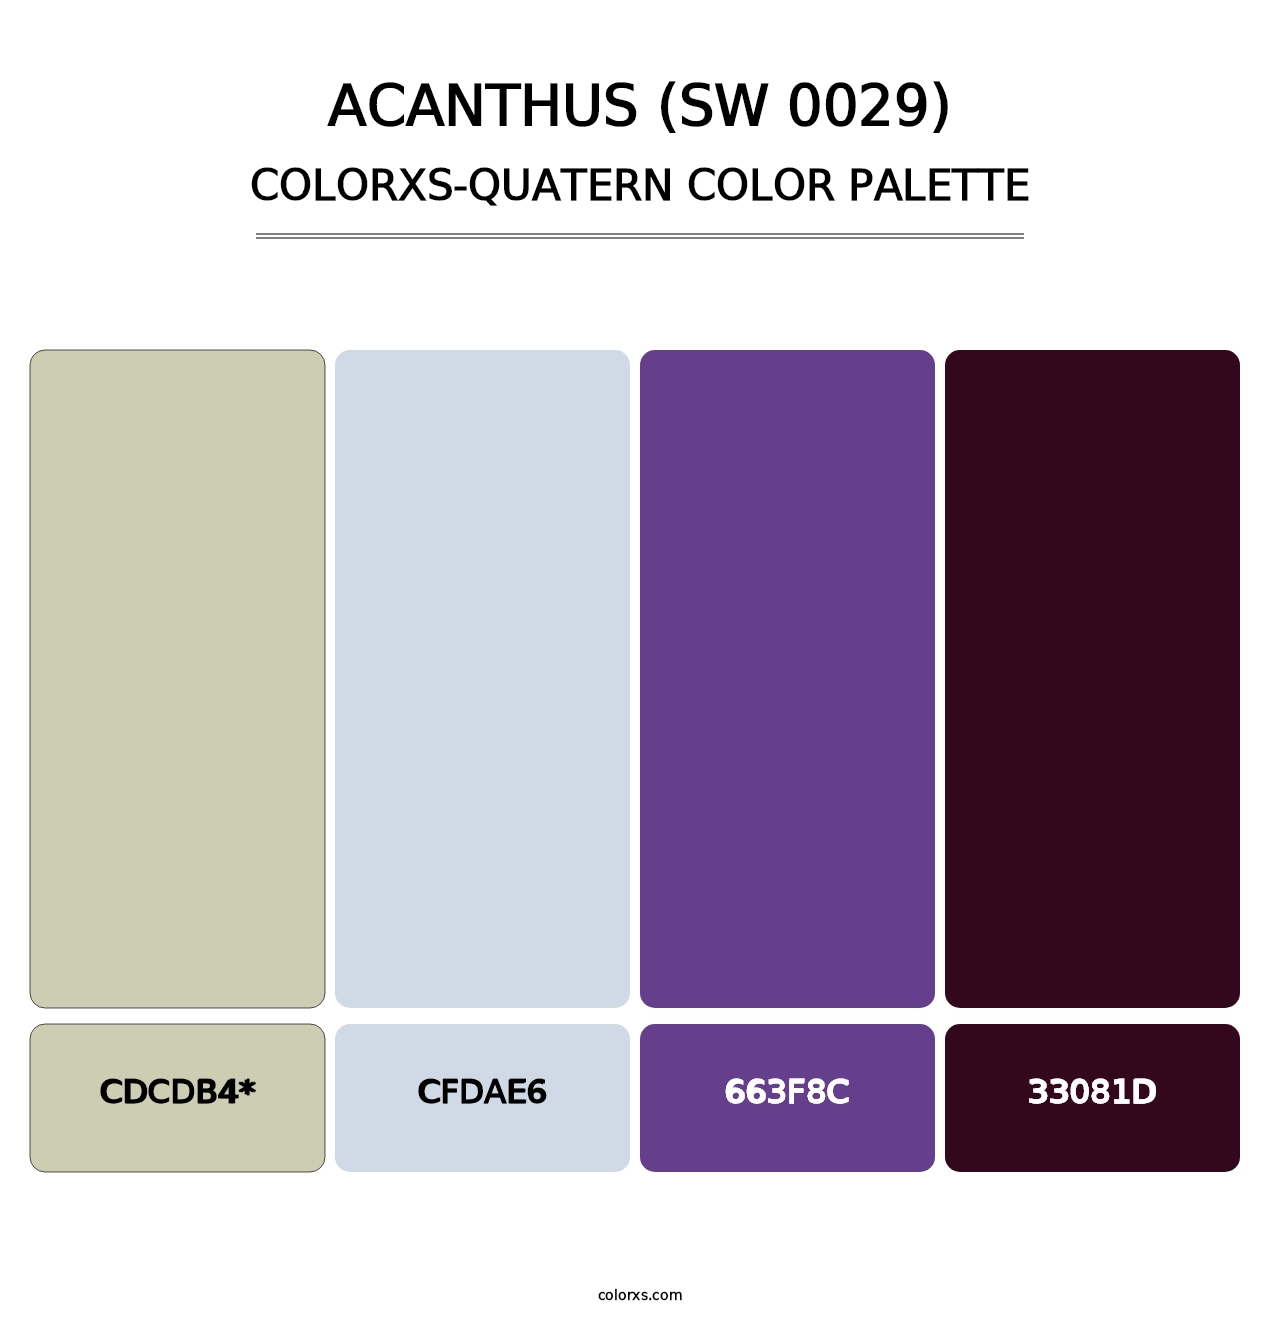 Acanthus (SW 0029) - Colorxs Quatern Palette